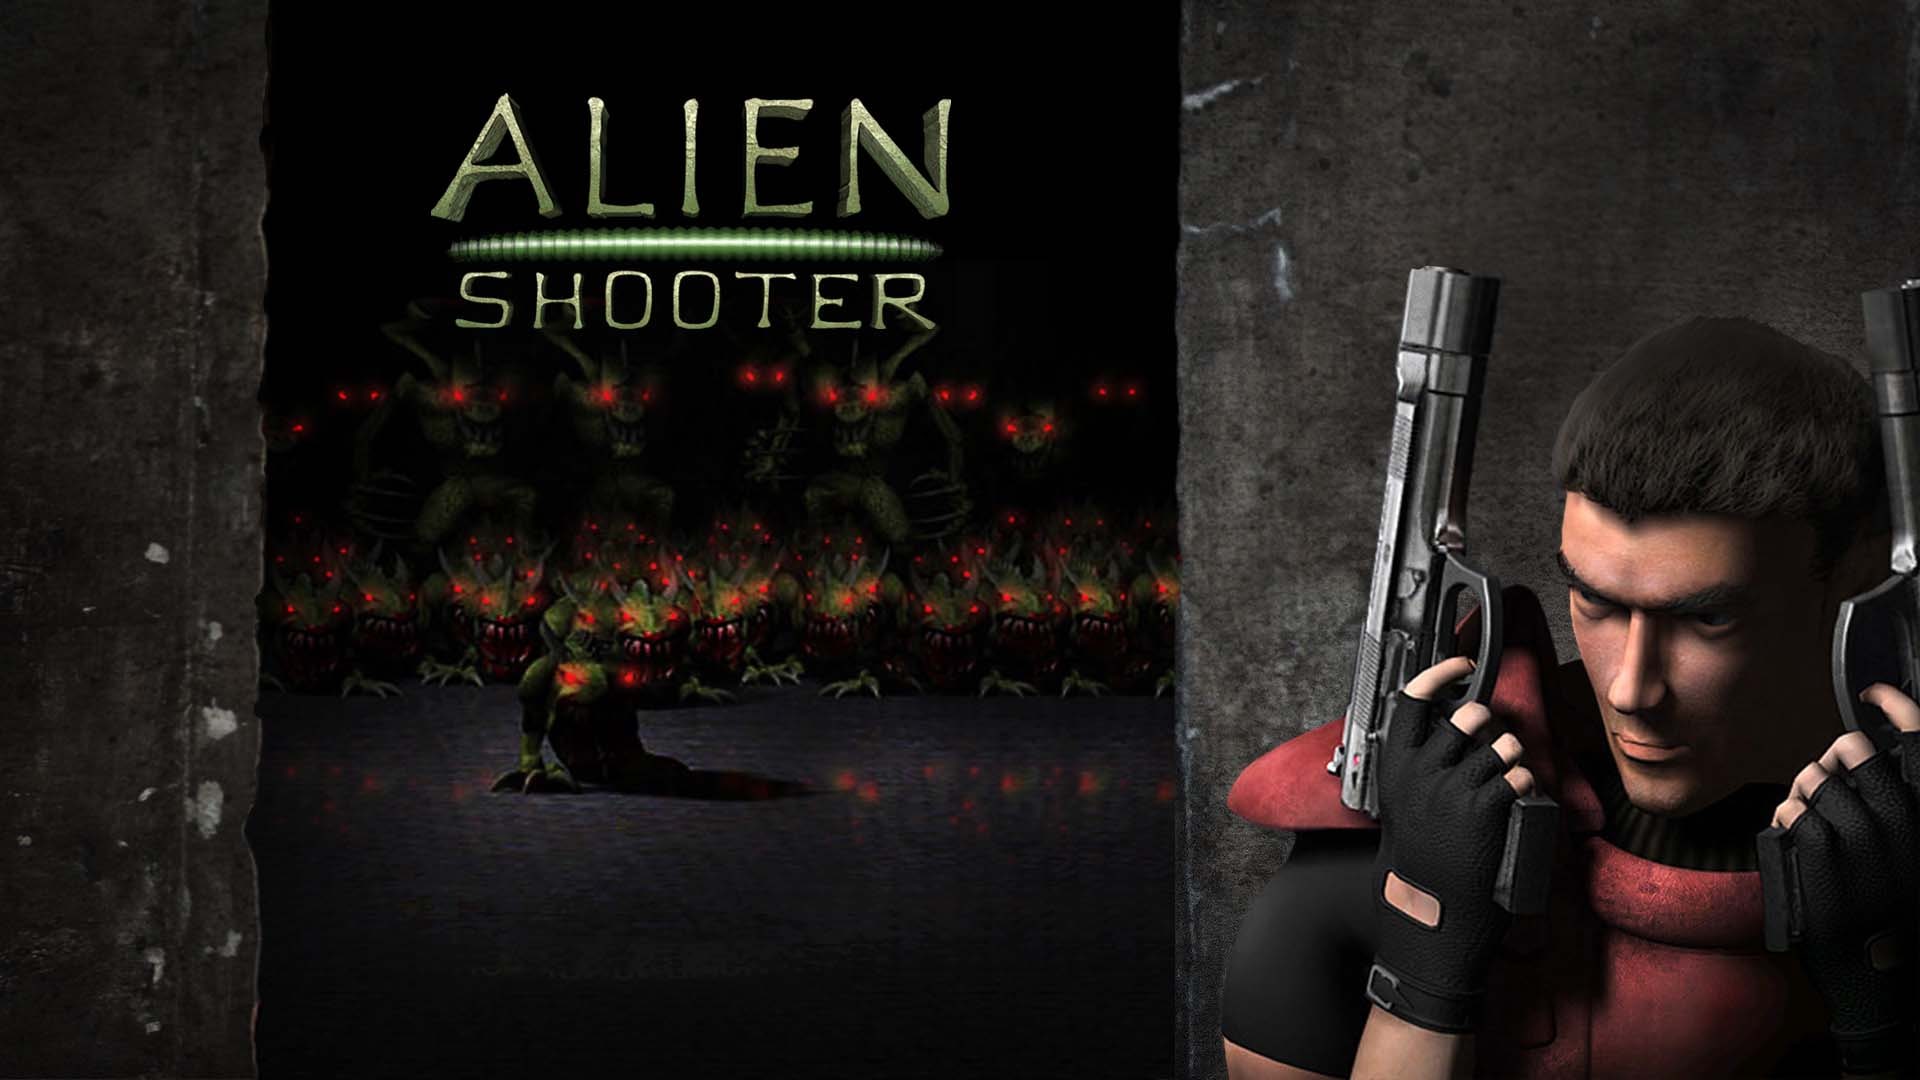 Alien Shooter (English Ver.)